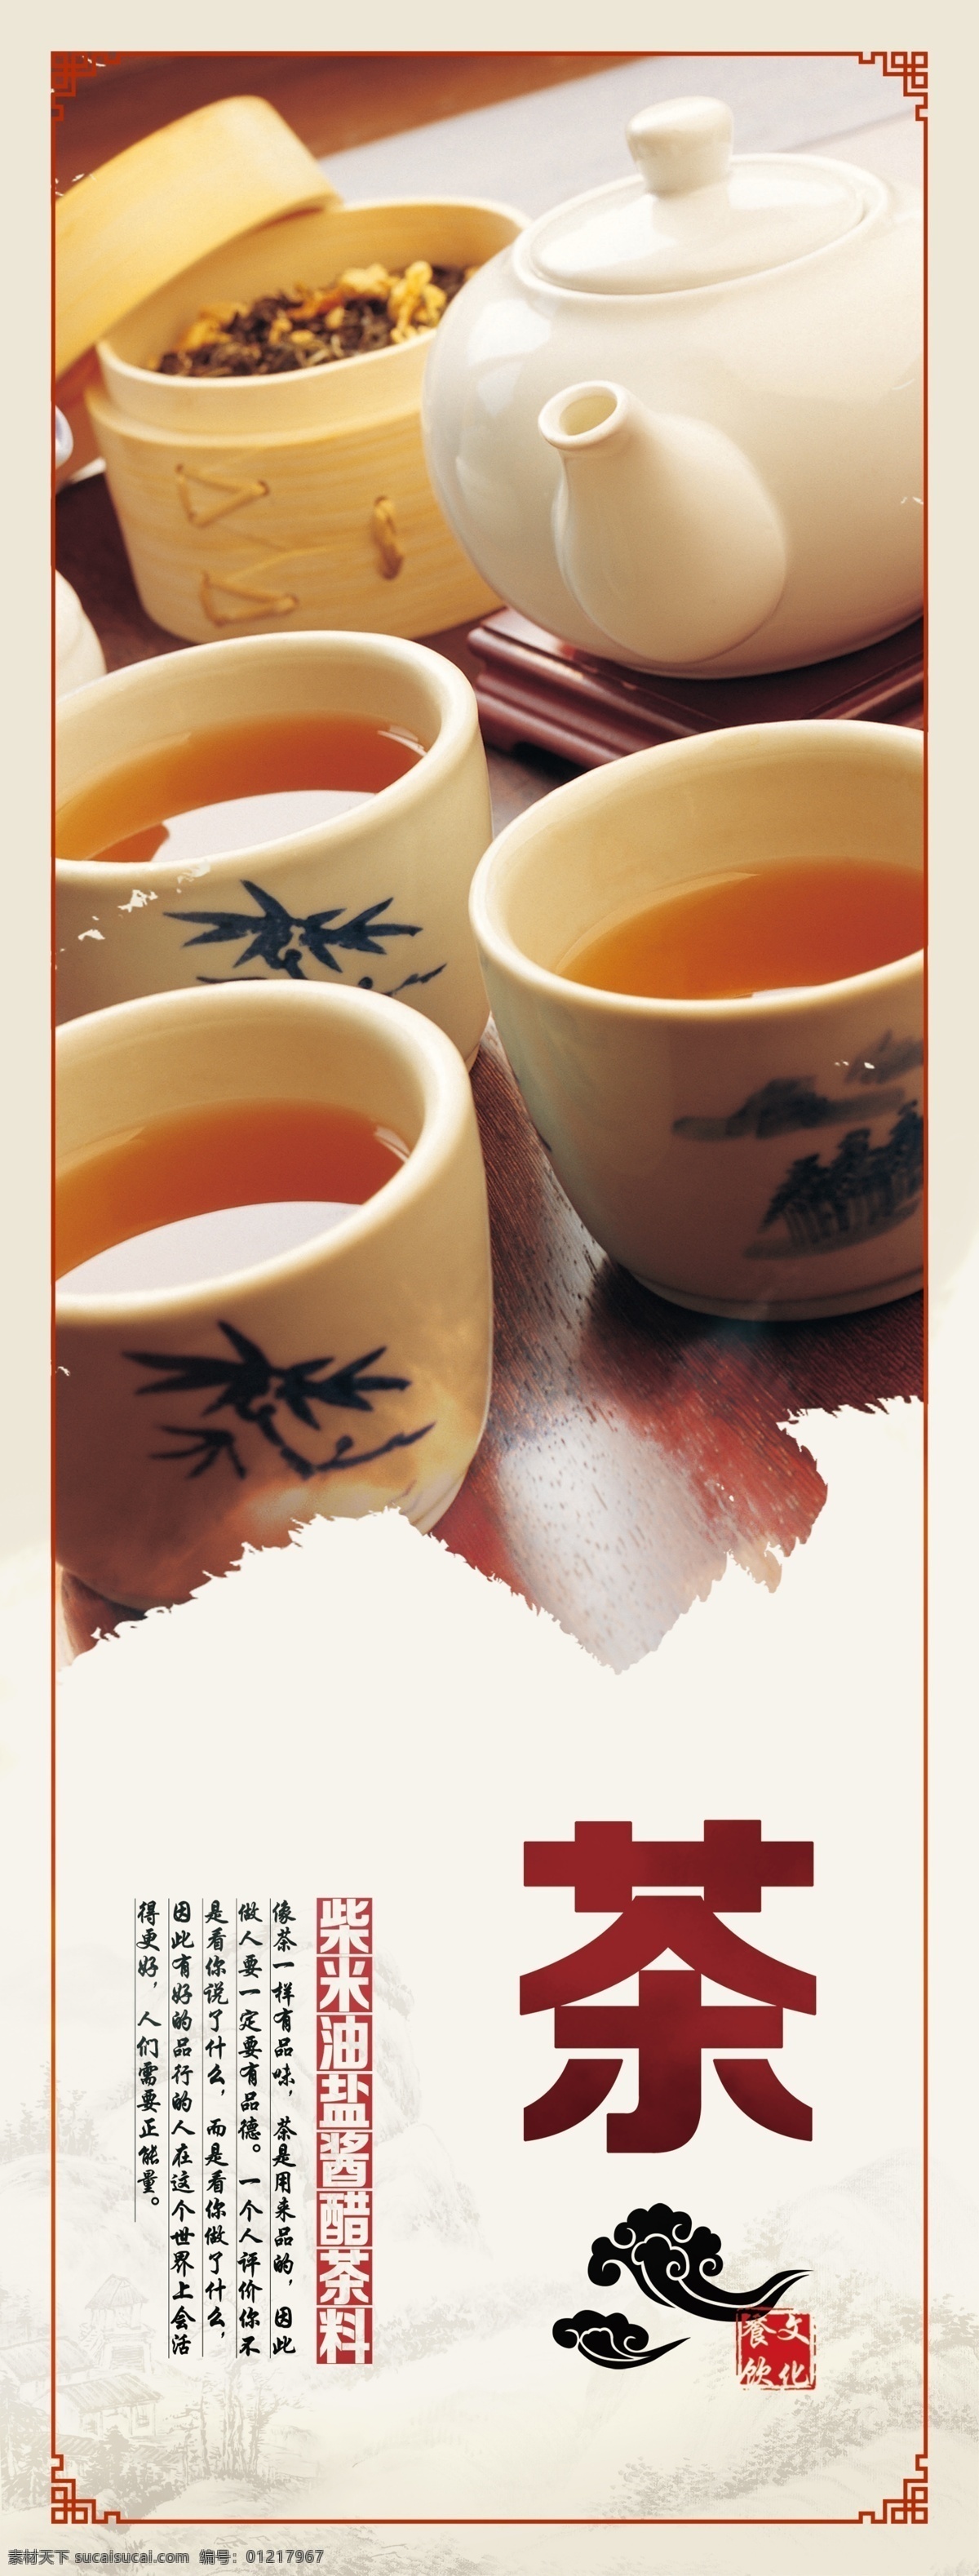 茶 柴米油盐 酱醋茶料 餐饮文化展板 餐饮文化海报 饮食文化 生活百科 餐饮美食